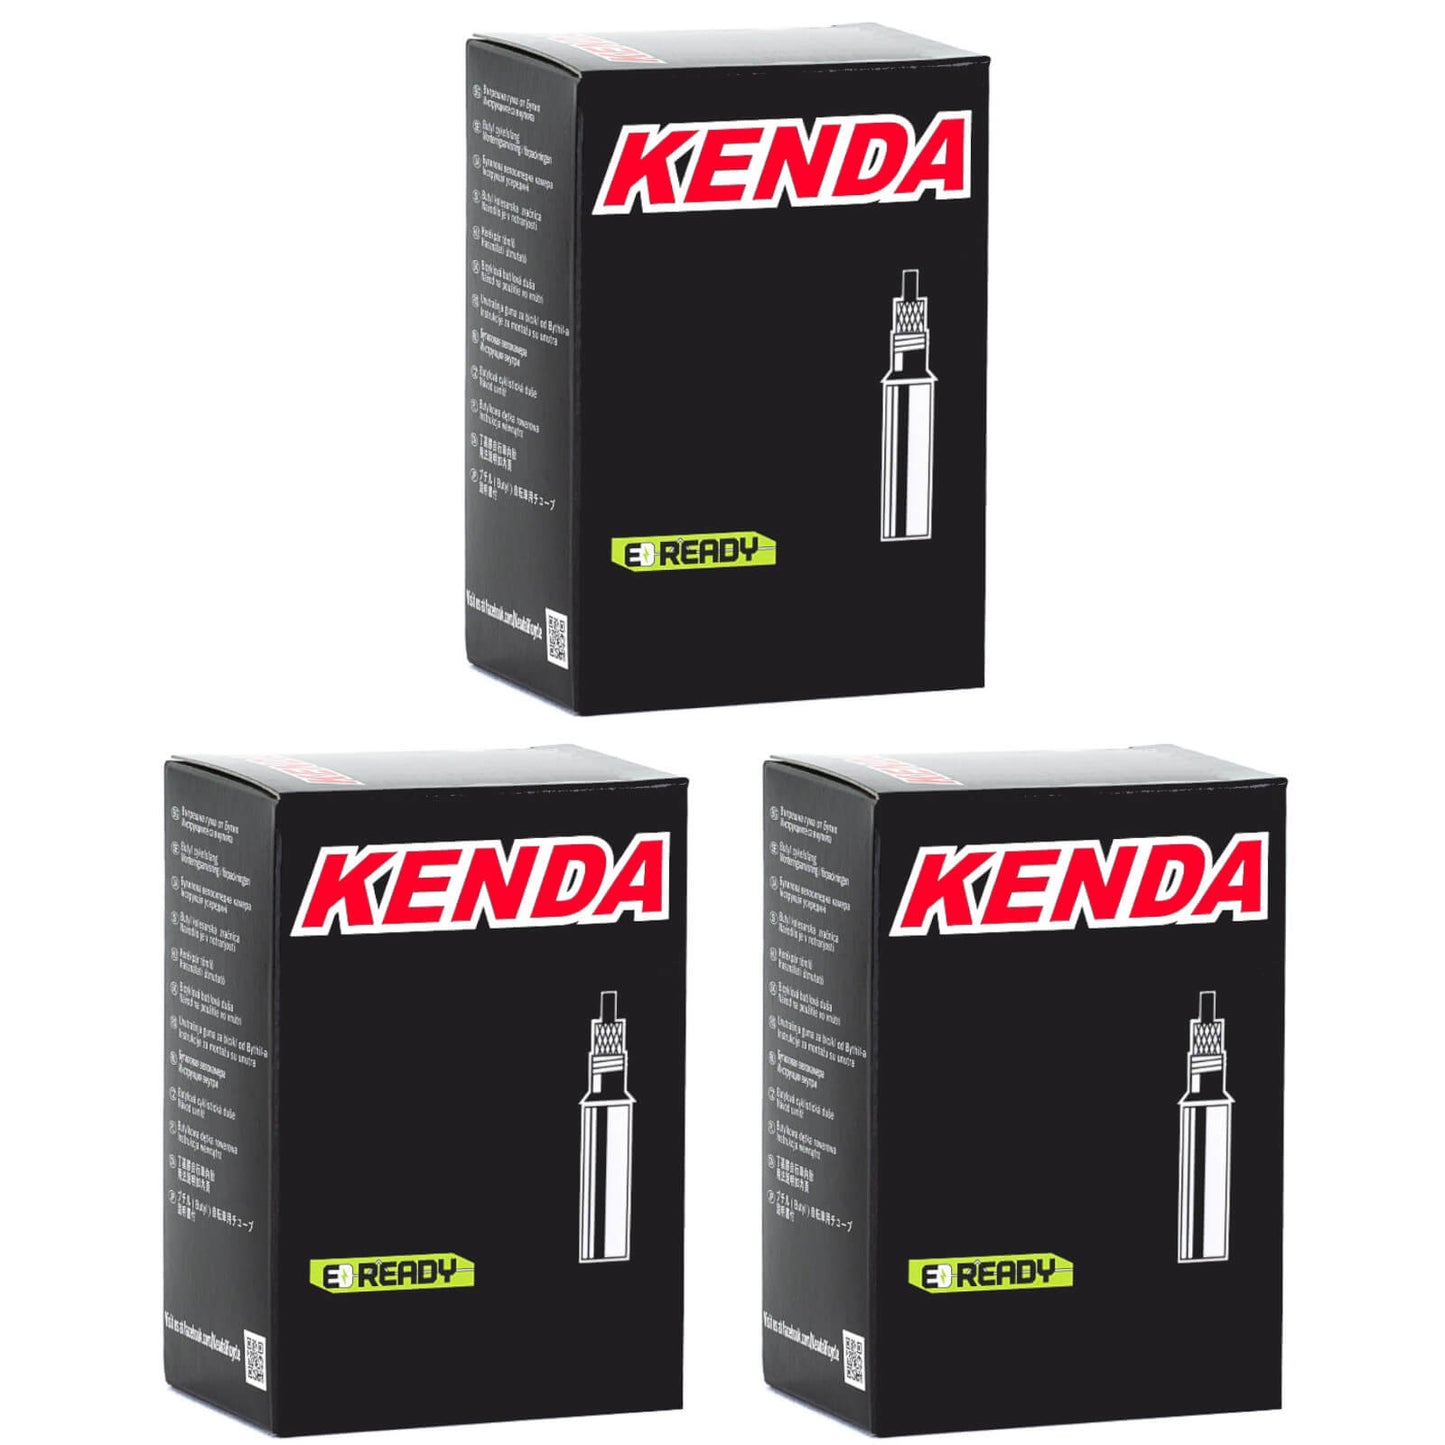 Kenda 700x30-43c 700c Presta Valve Bike Inner Tube Pack of 3